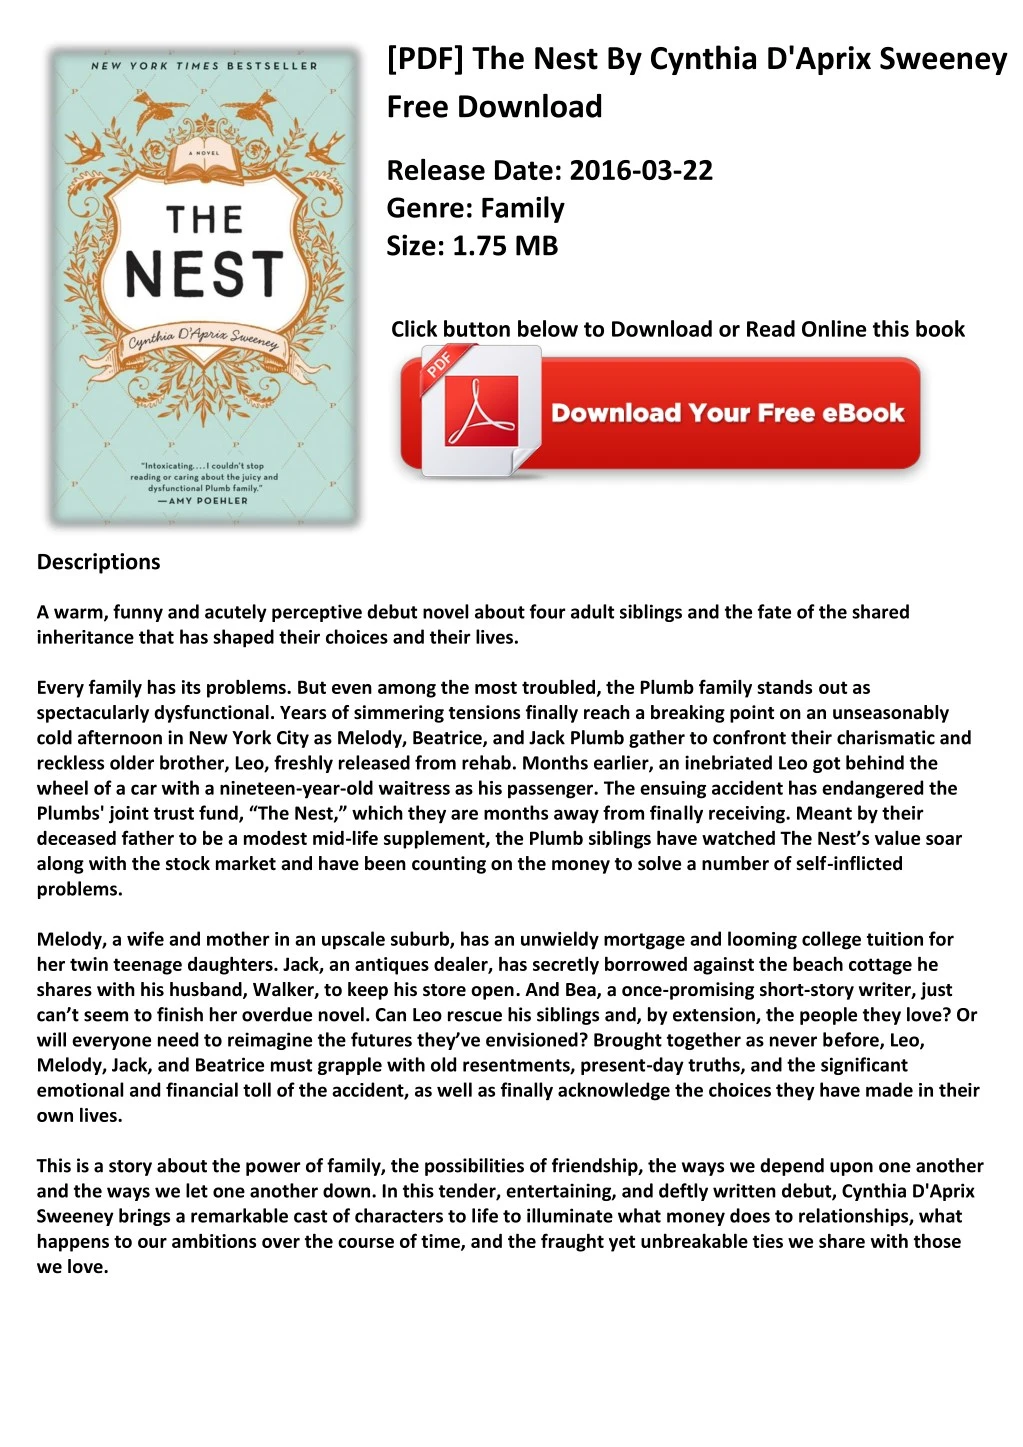 pdf the nest by cynthia d aprix sweeney free